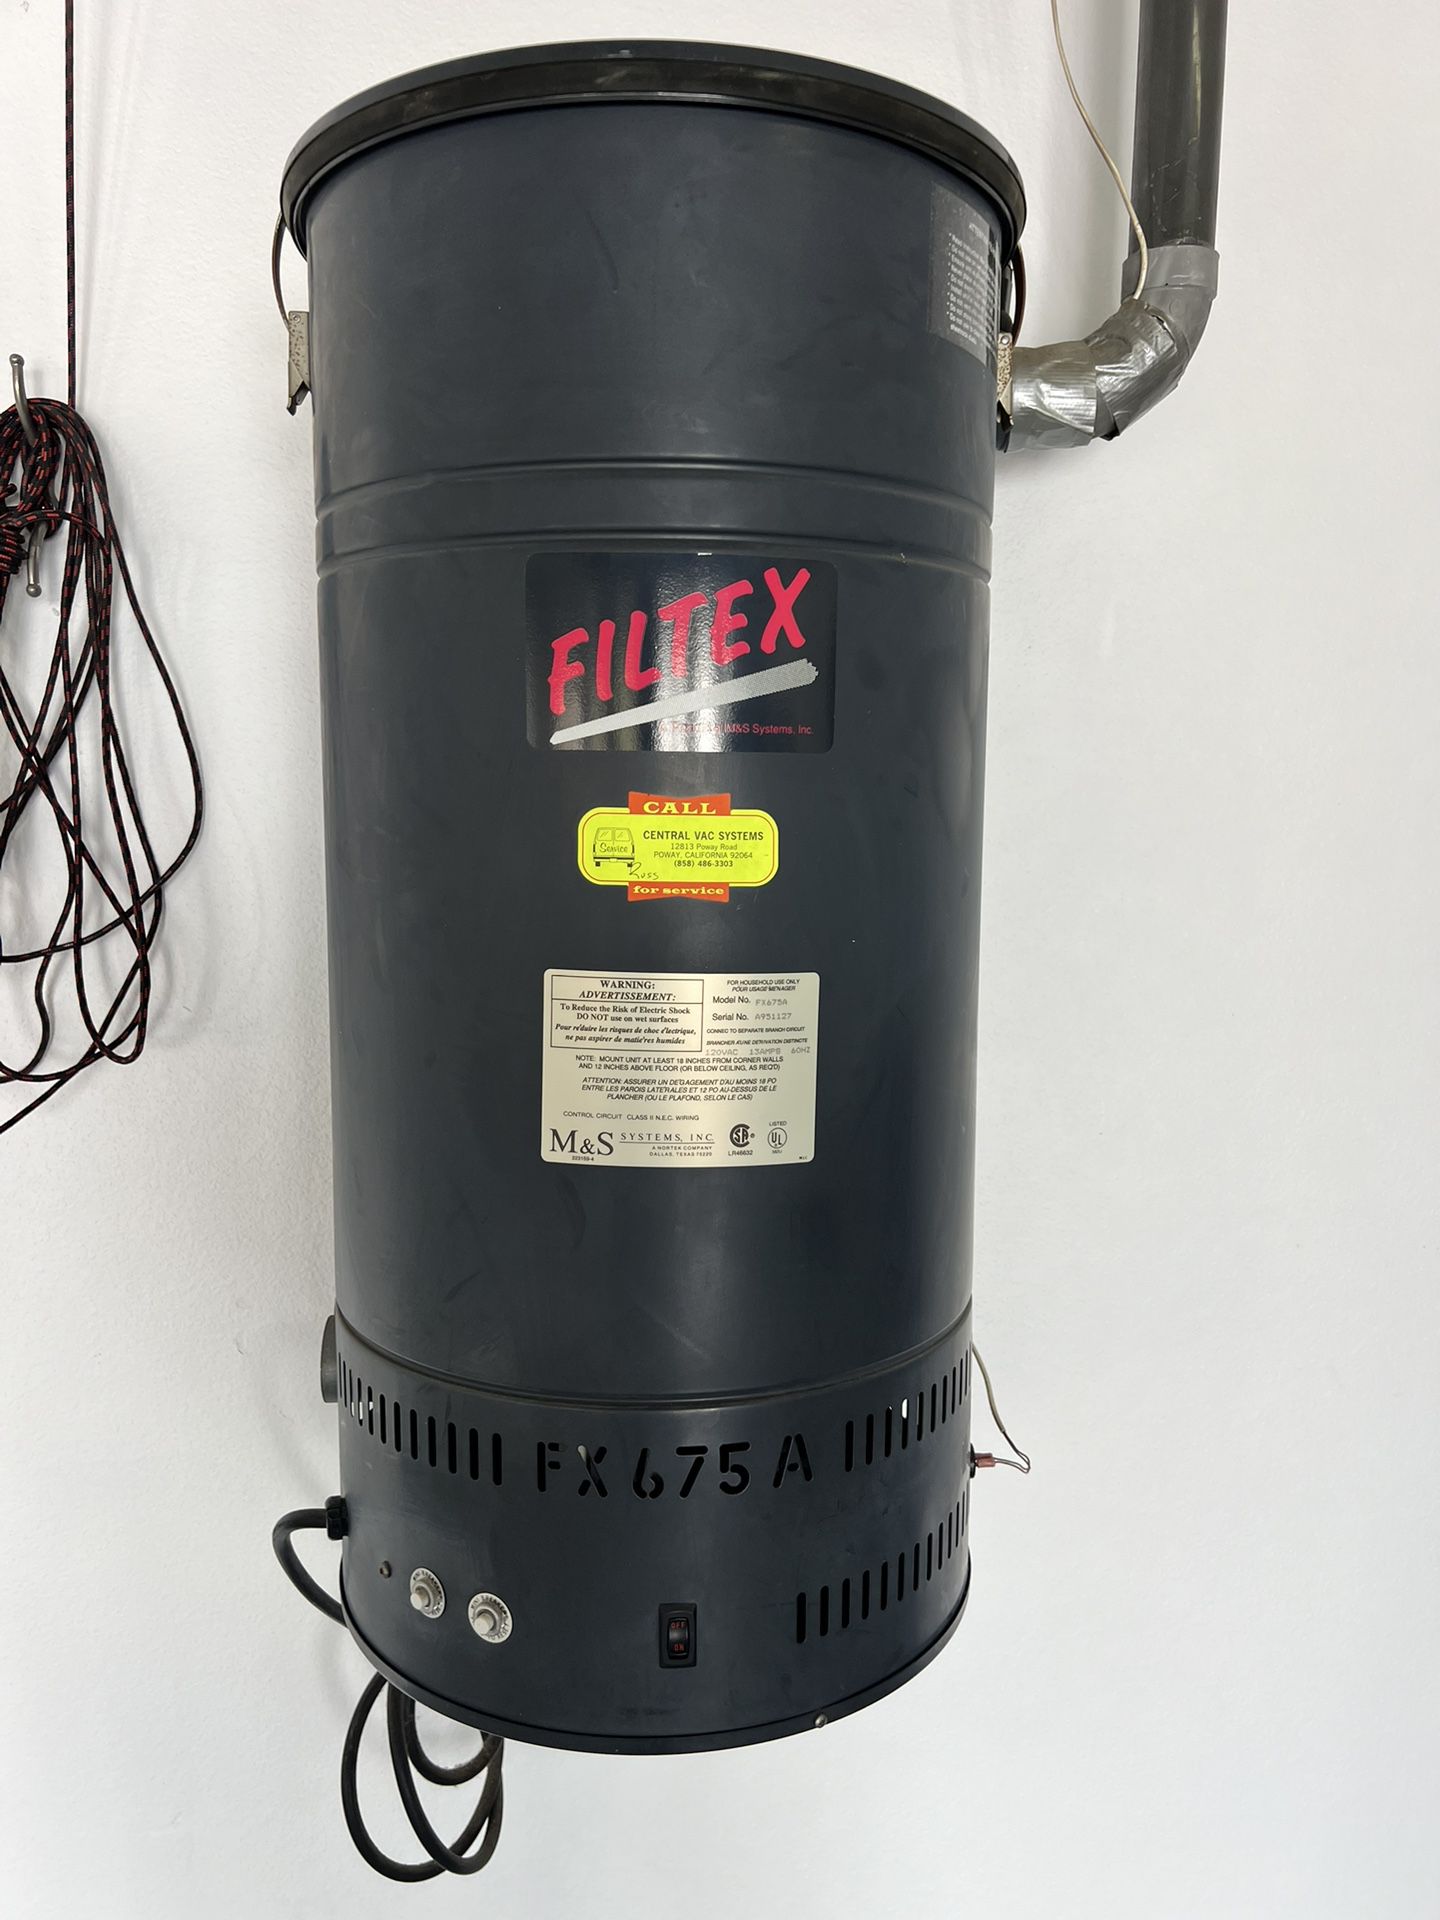 M&s Filtex Central Vacuum Fx900